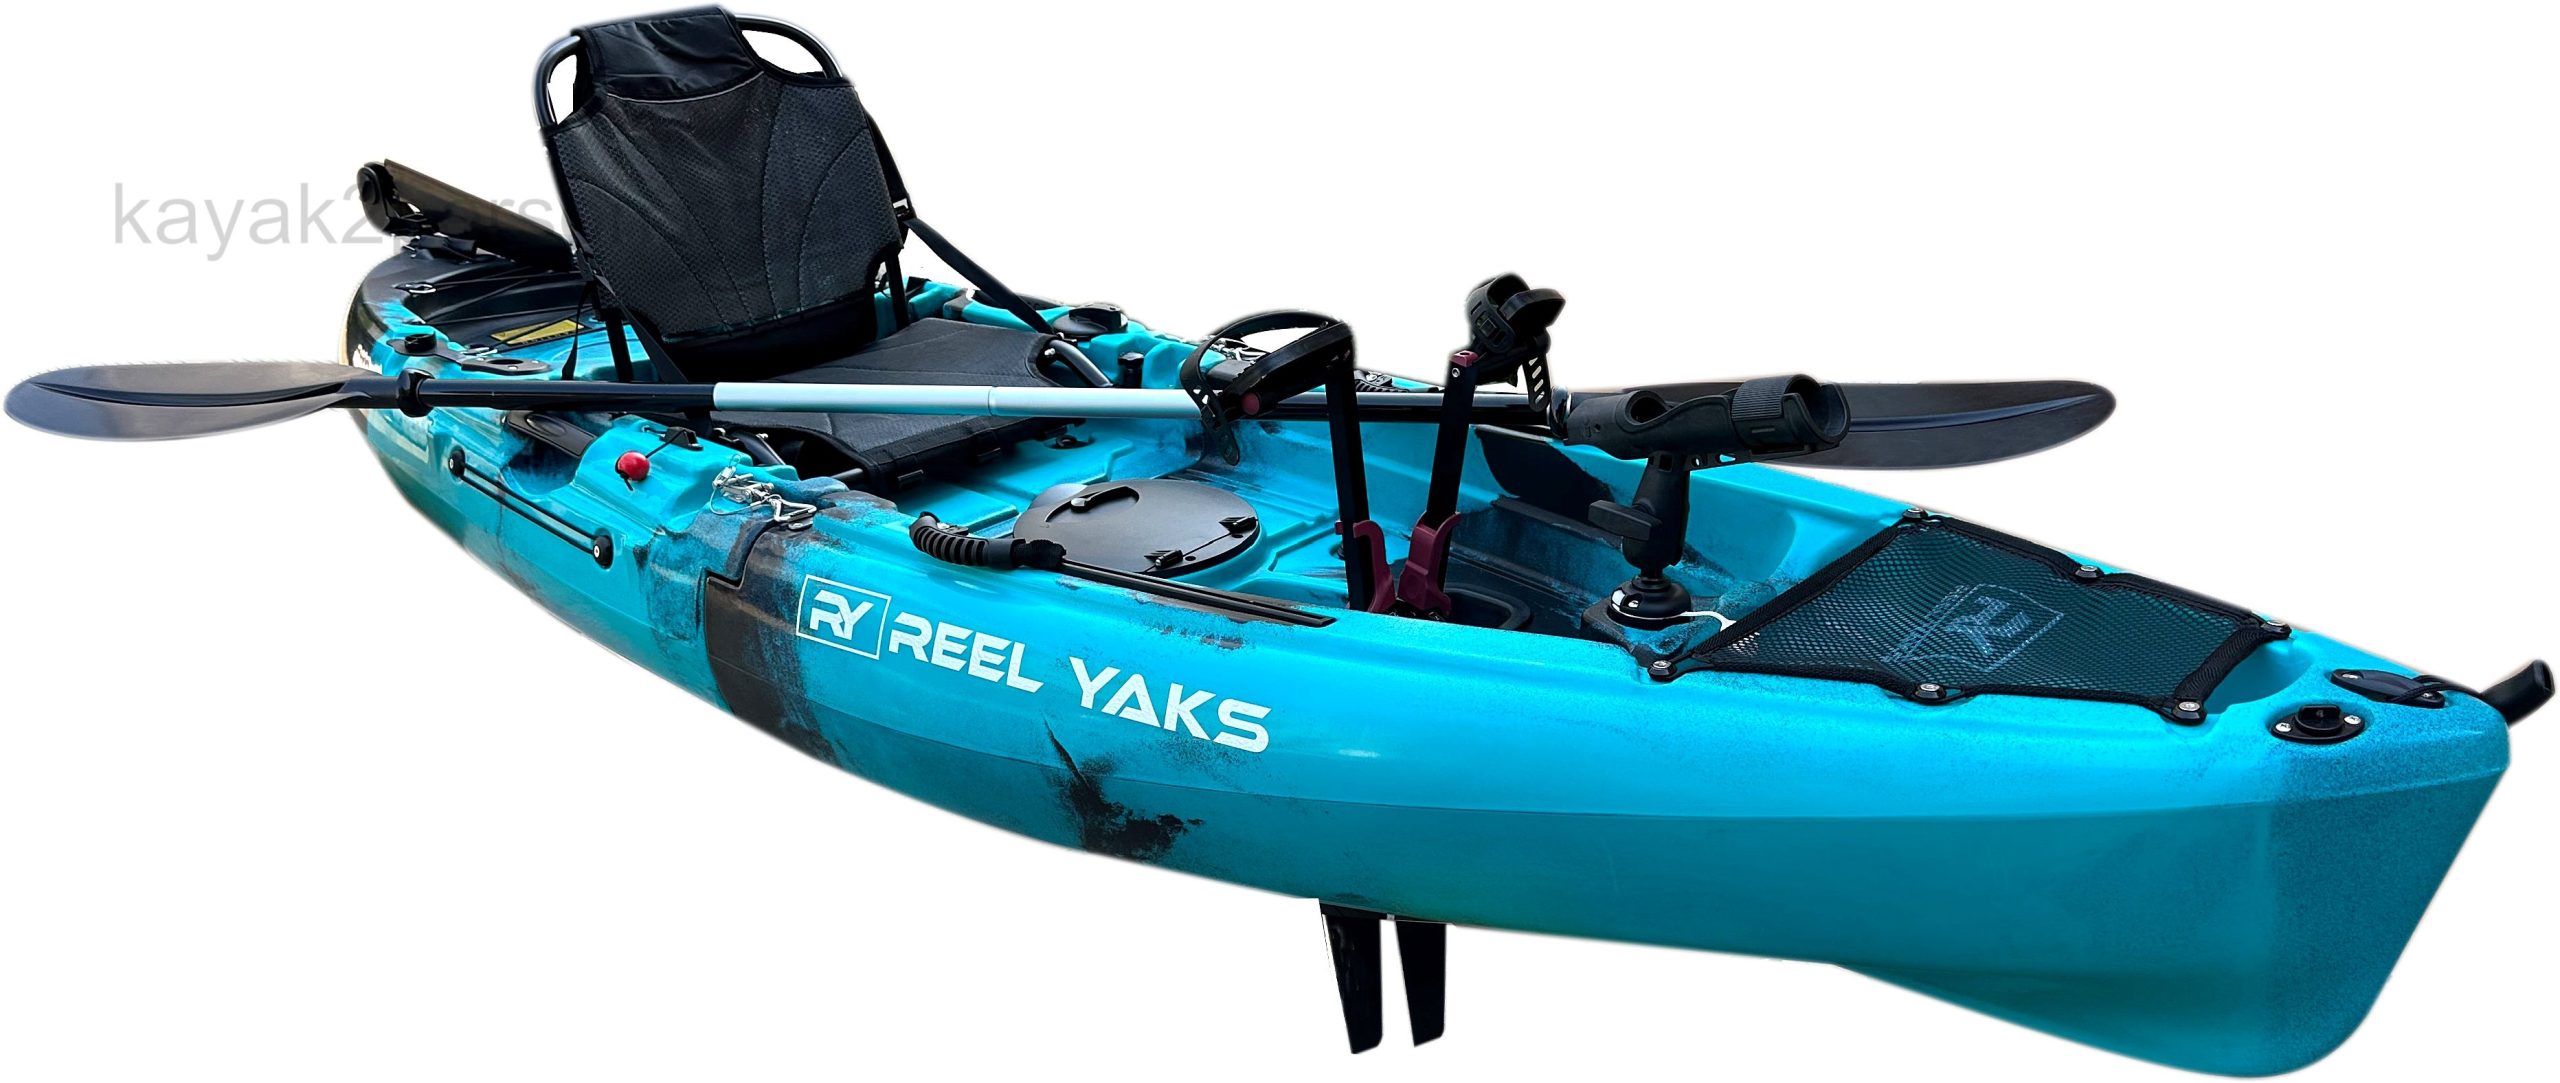 Super Cheap 9.5ft Modular Raptor Pedal Fishing Kayak